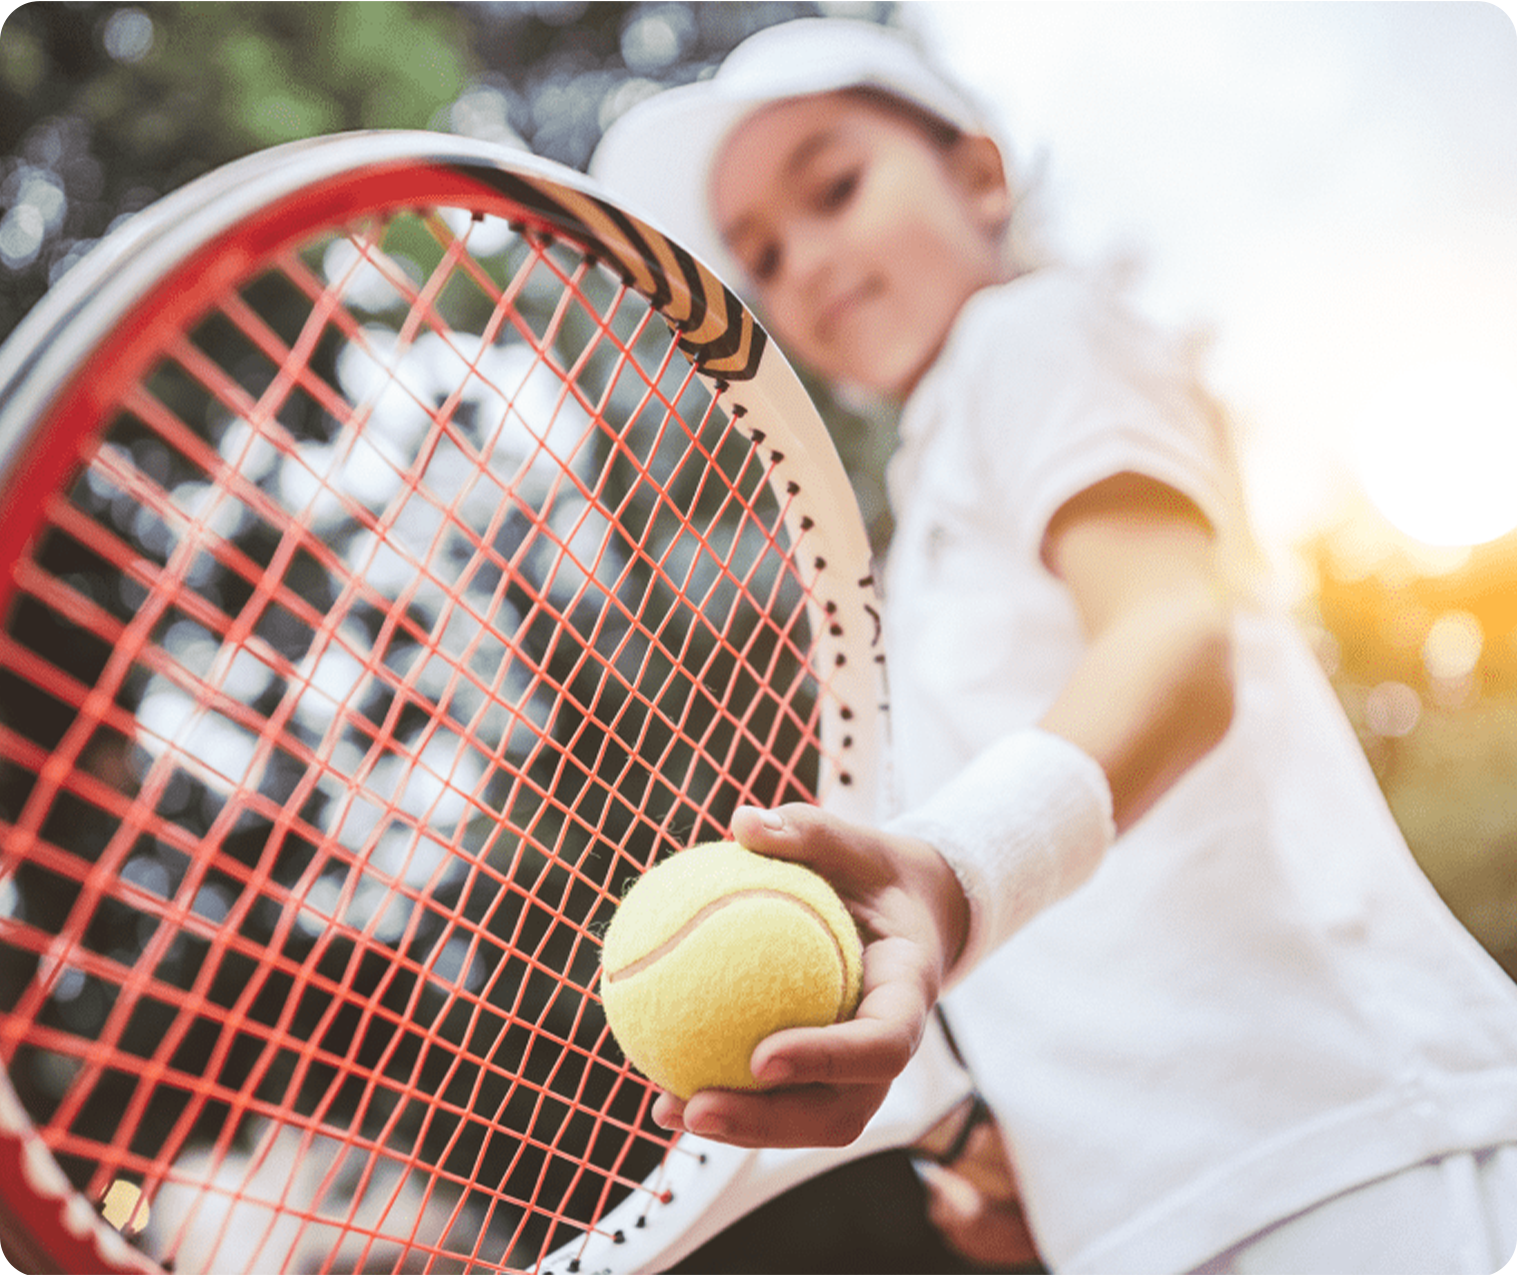 групповые занятия теннисом для детей